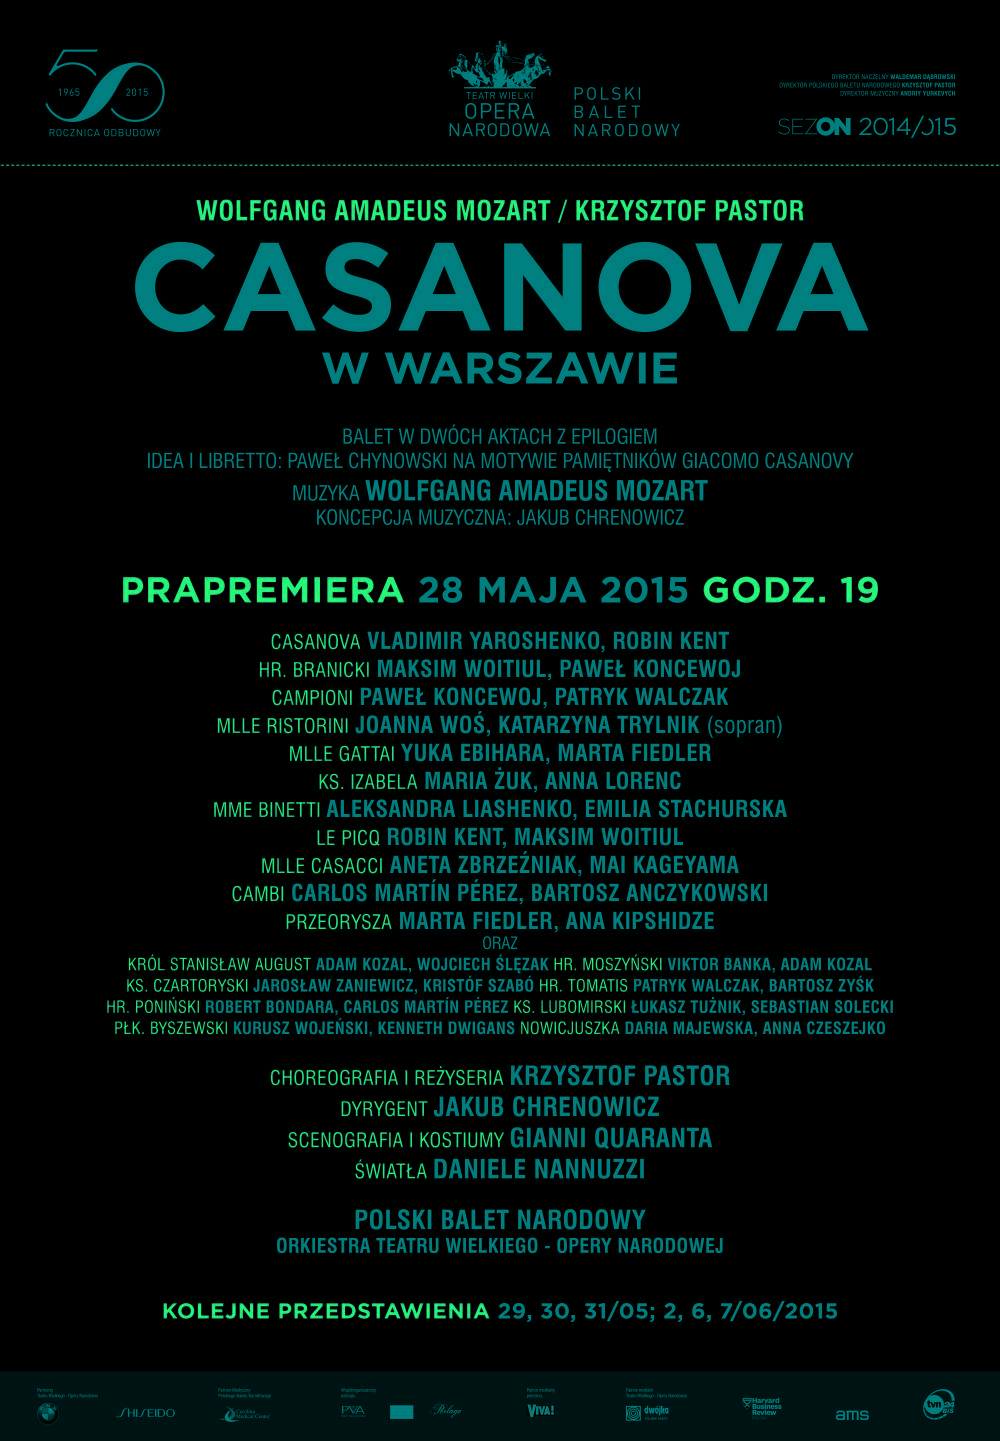 Afisz "Casanova w Warszawie" Wolfgang Amadeus Mozart / Krzysztof Pastor prapremiera 2015-05-28